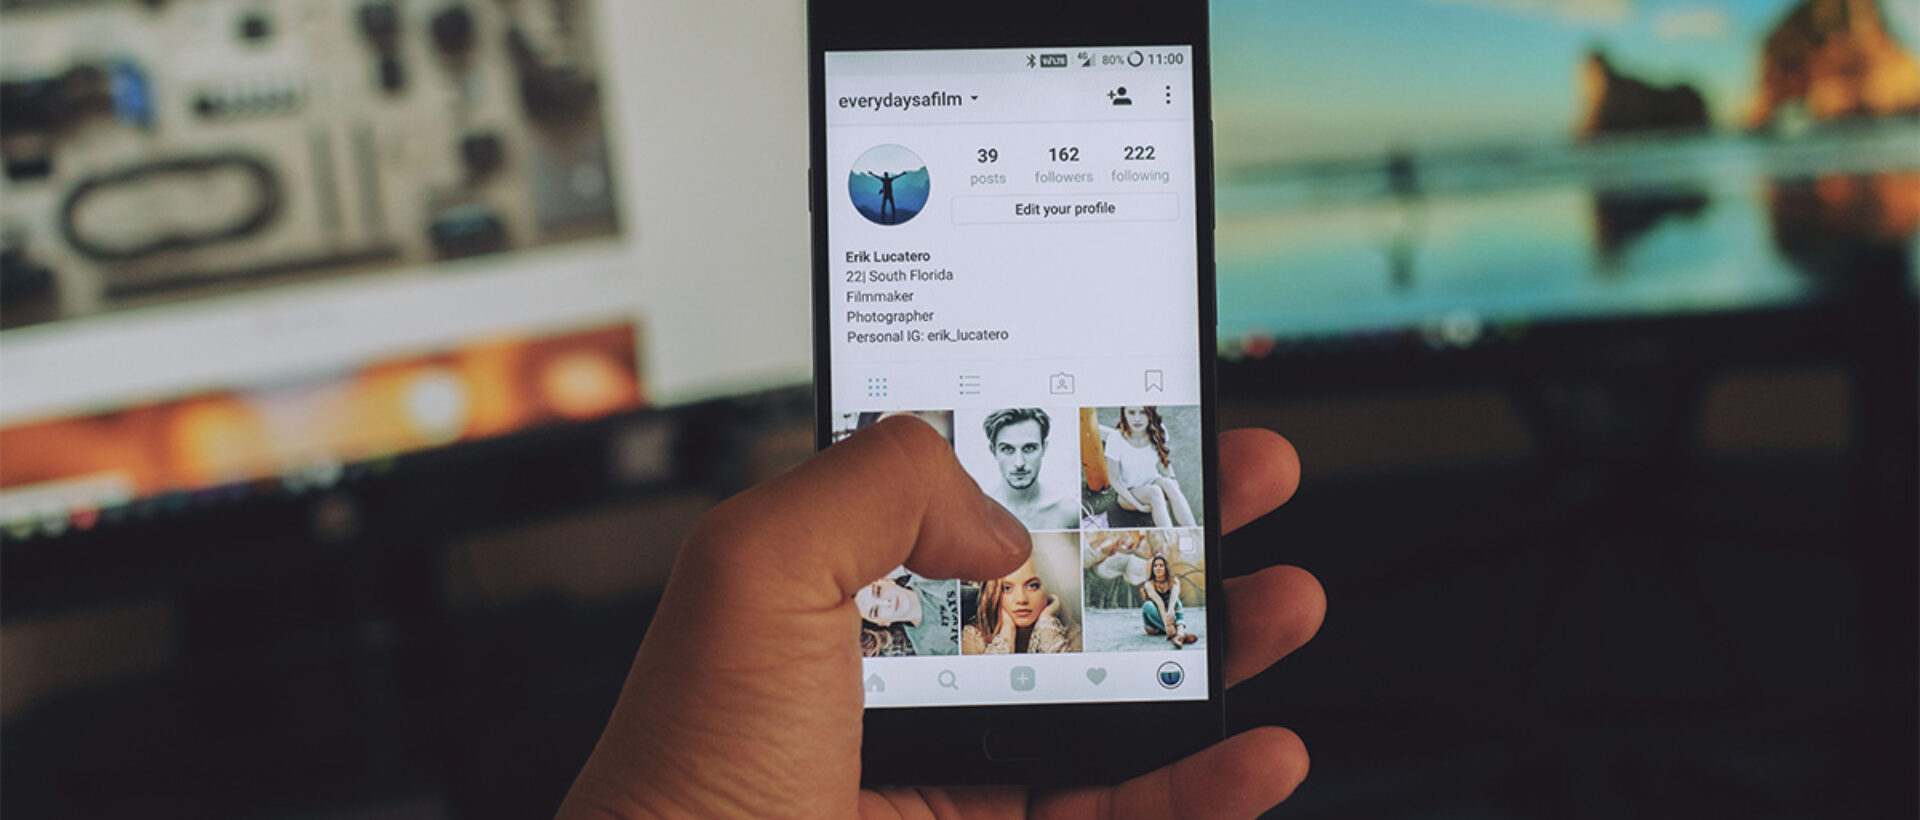 Wie kann erfolgreich auf Instagram geposted werden?